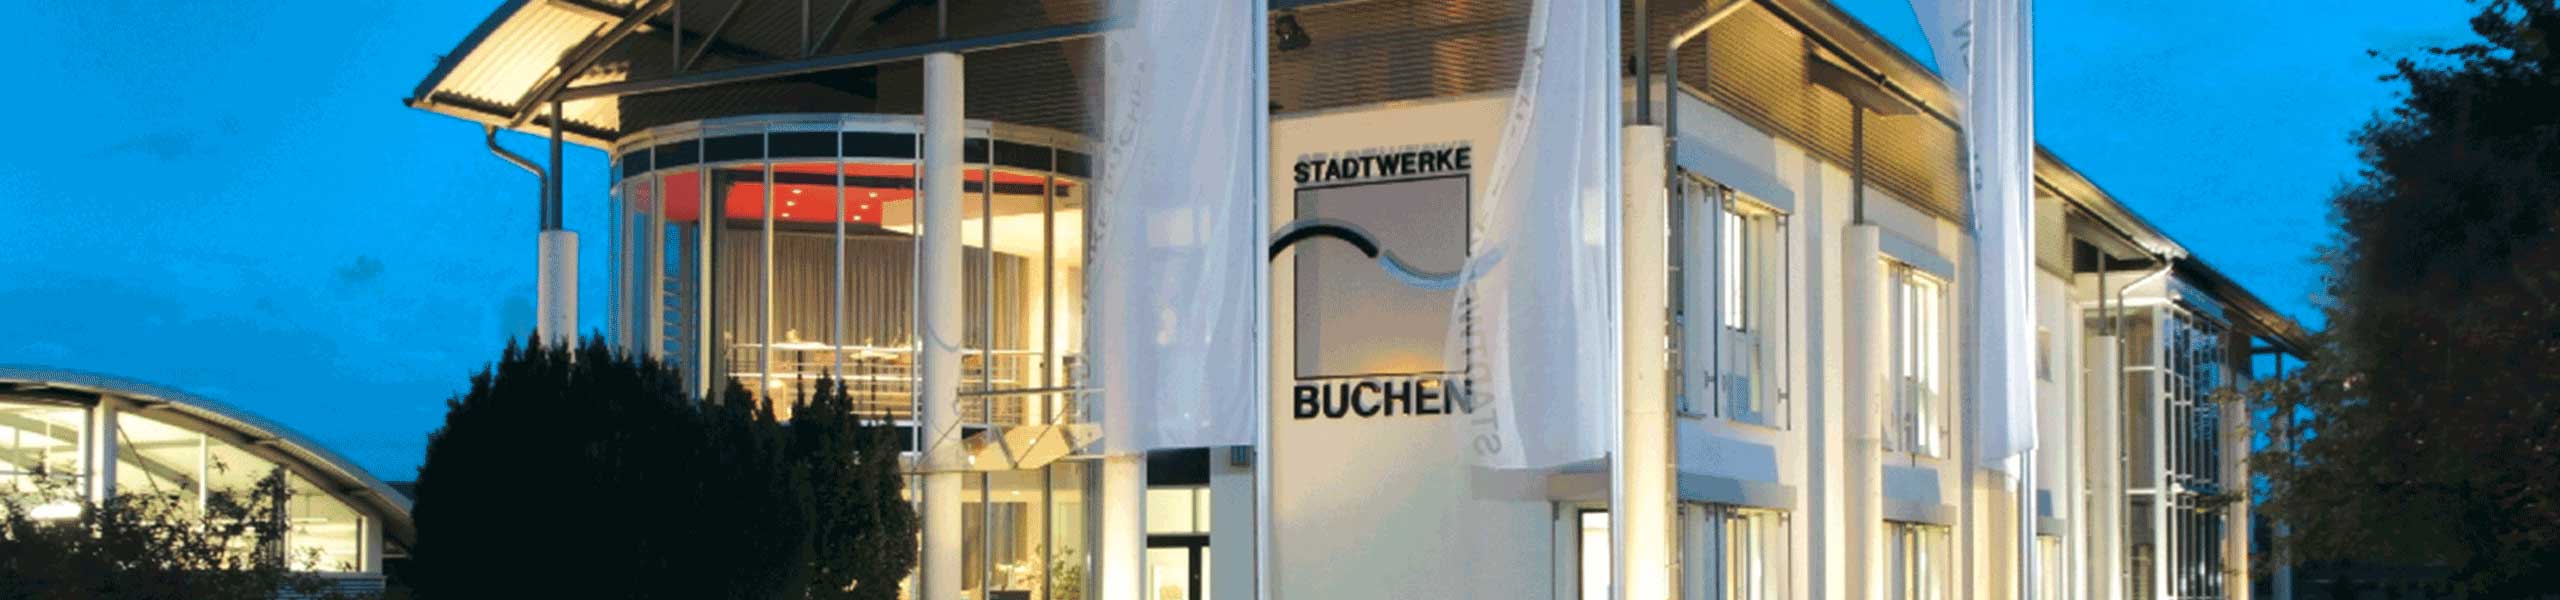 Stadtwerke Buchen GmbH & Co KG - Ihr Versorger vor Ort - swb.magazin 3/2022